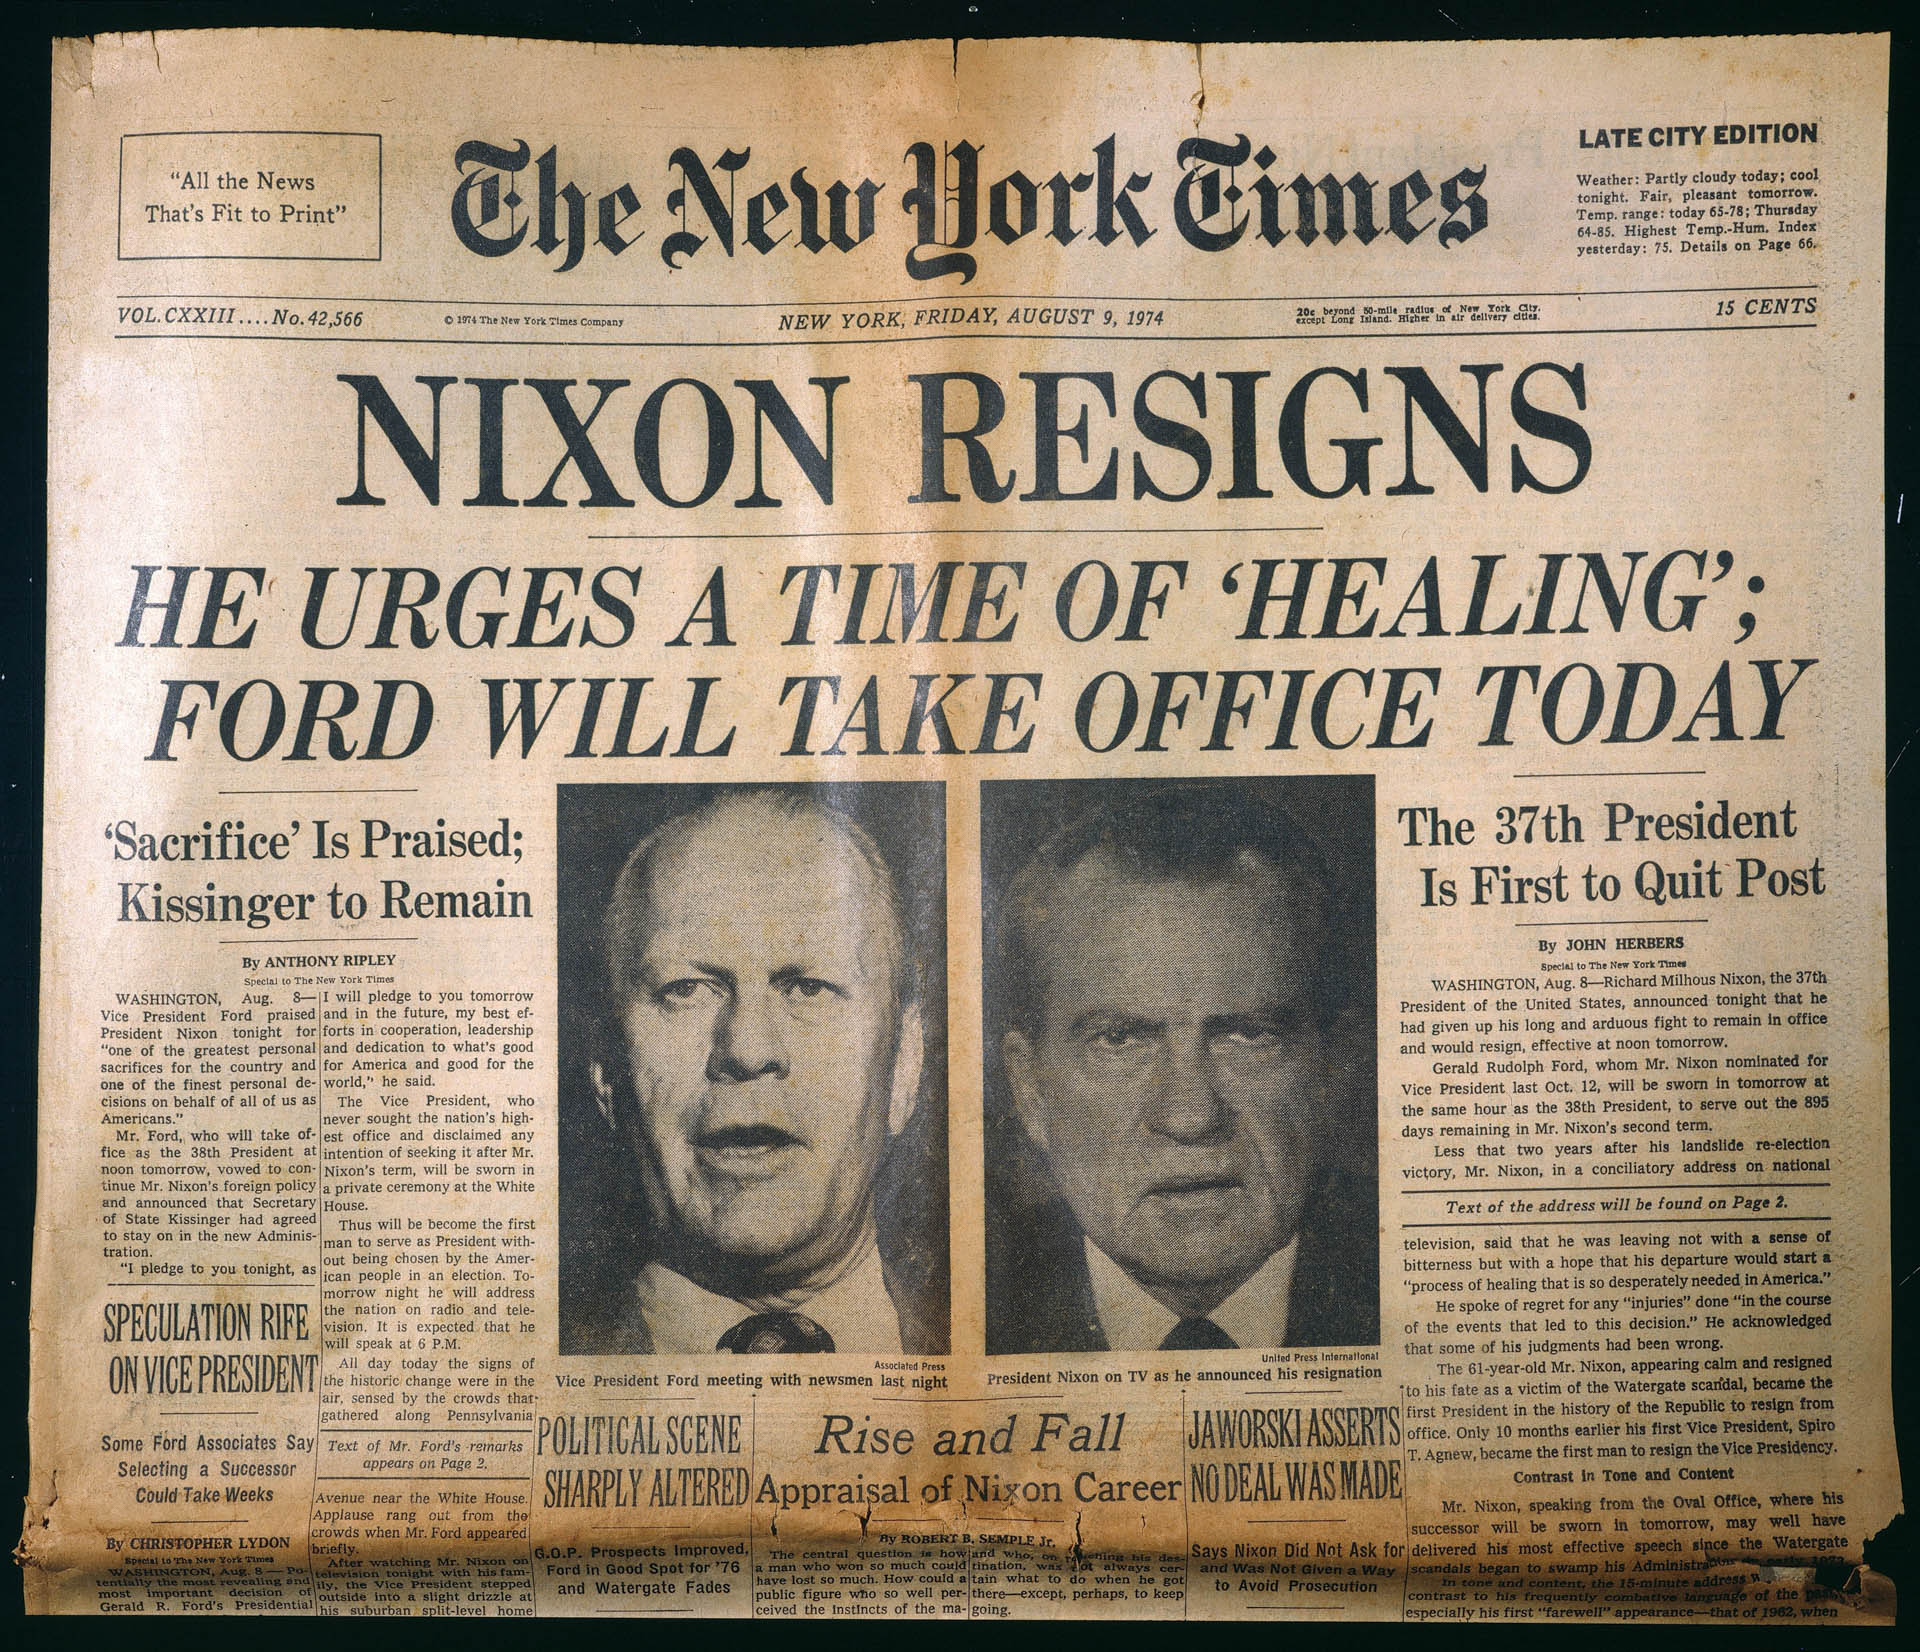 Το σκάνδαλο Watergate που οδήγησε τον Νίξον στην παραίτηση